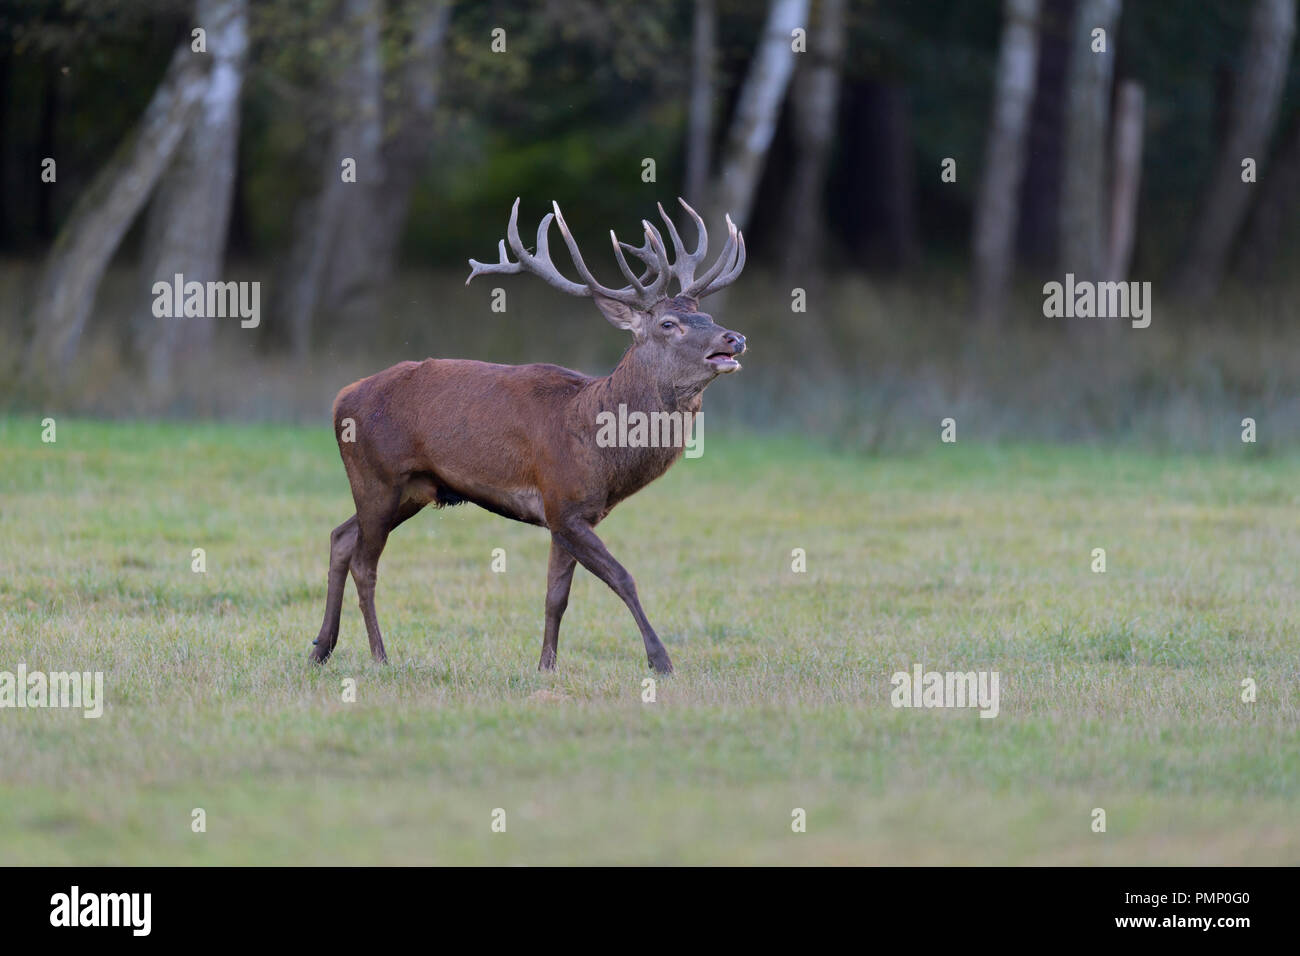 Red Deer, Cervus elaphus, Rutting Season, Germany, Europe Stock Photo